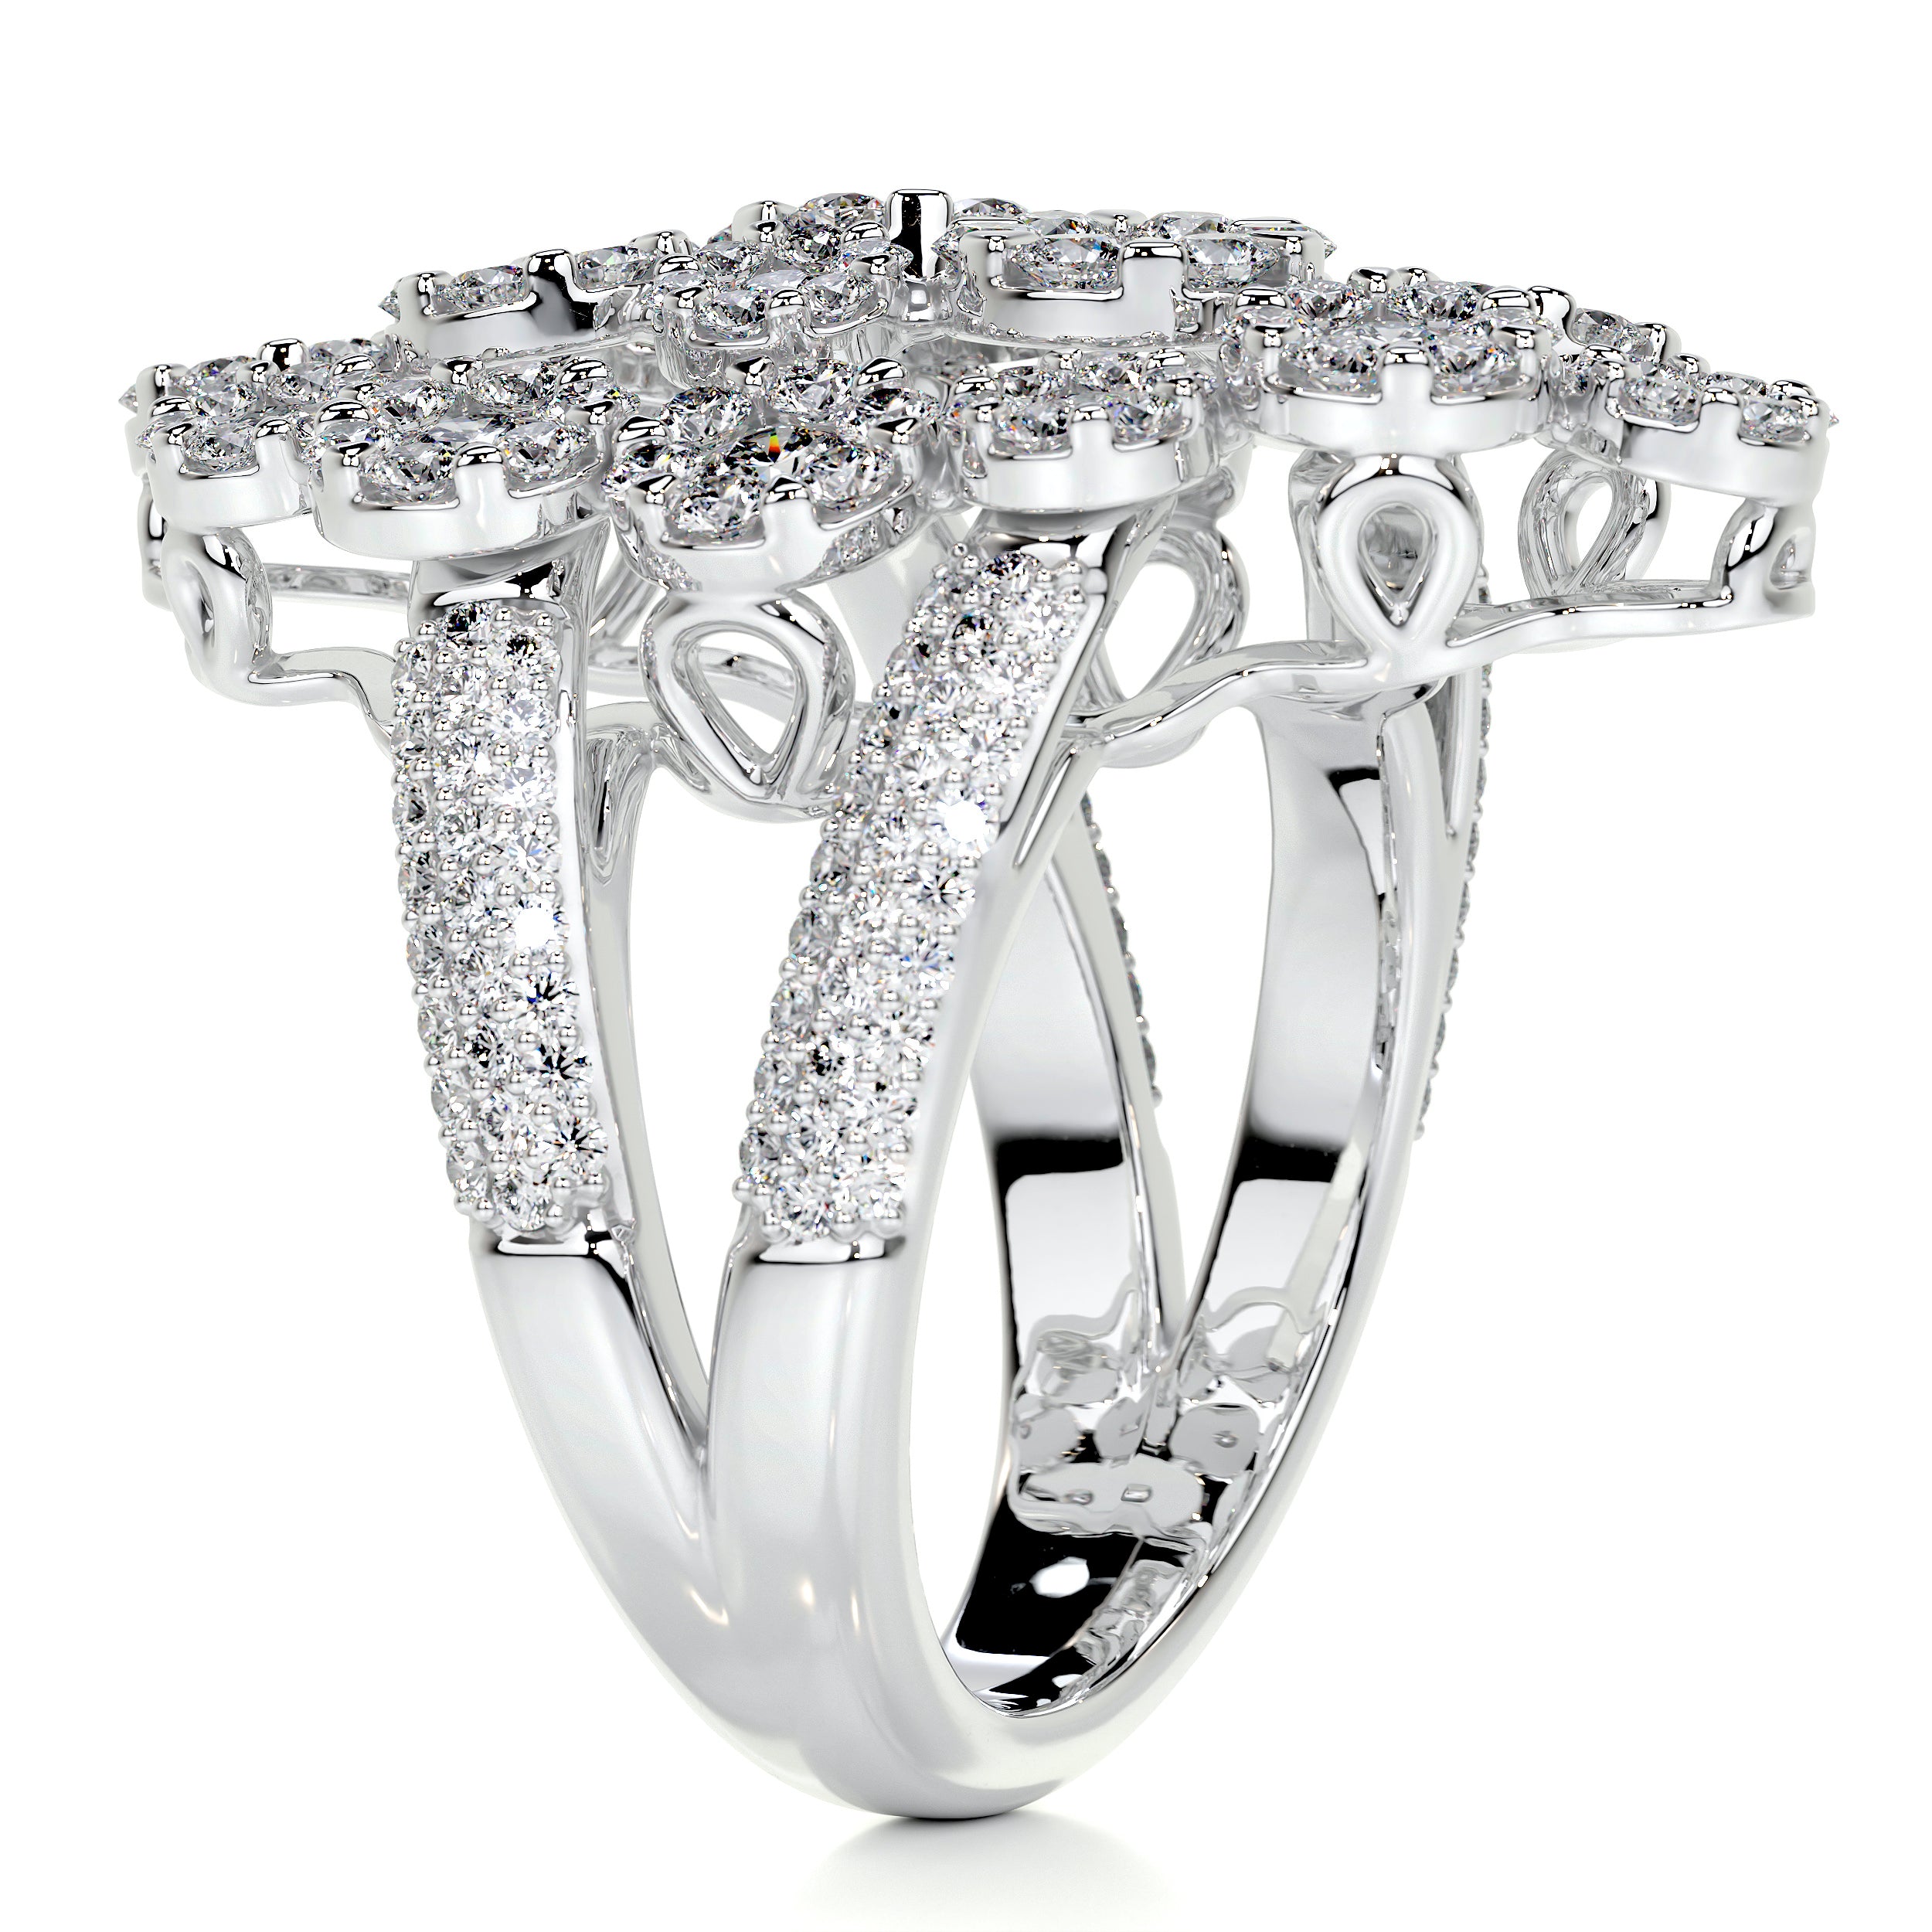 Noah Fashion Diamond Ring   (2.36 Carat) -18K White Gold